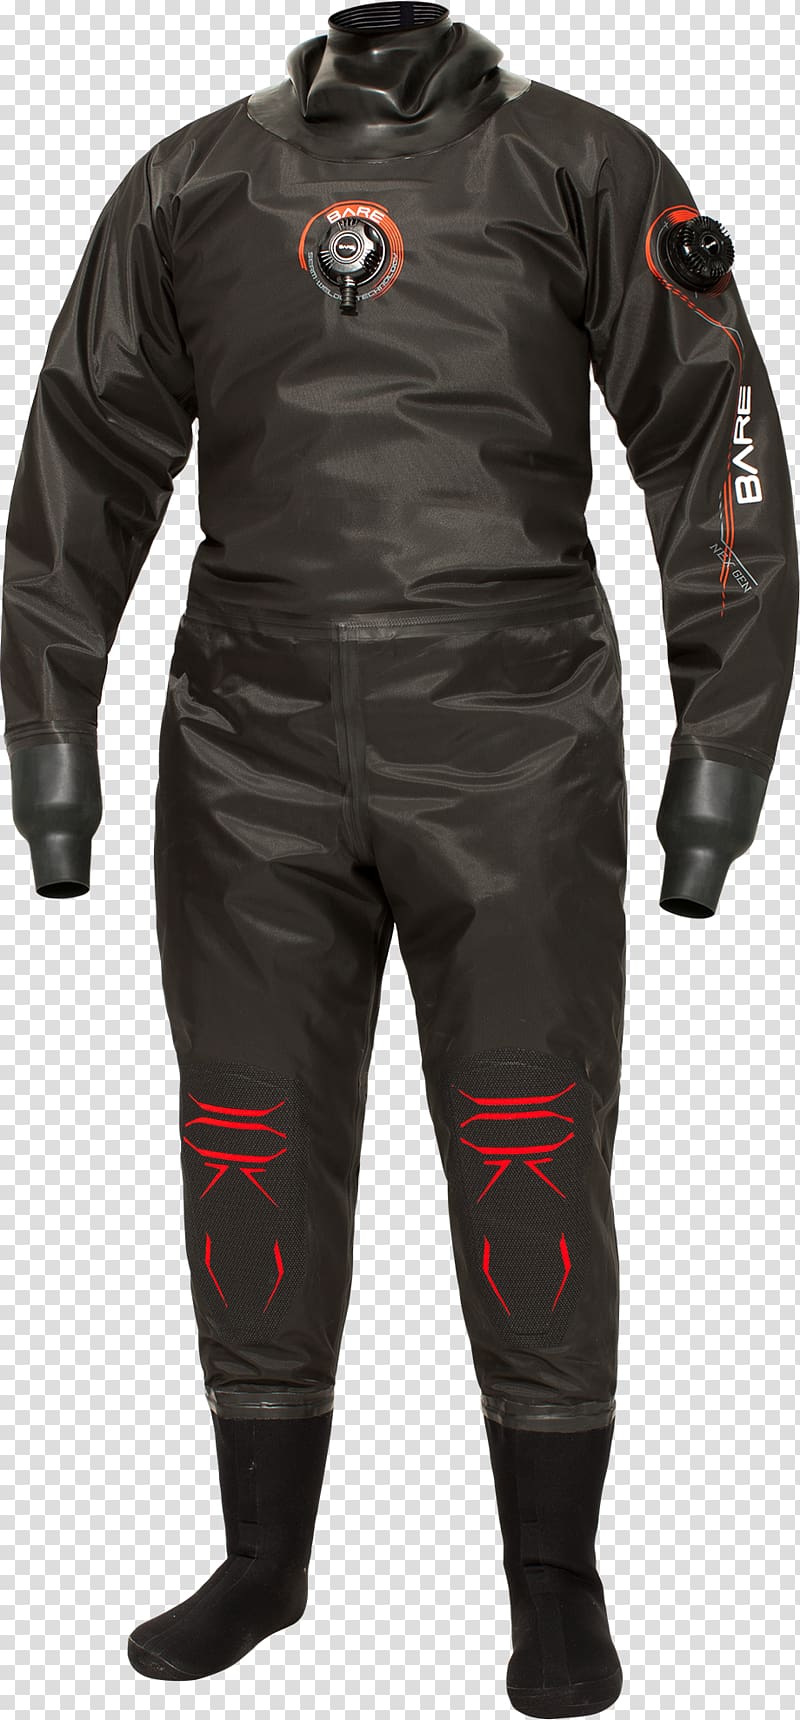 Dry suit Scuba diving Wetsuit Diving suit Glove, diving suit transparent background PNG clipart